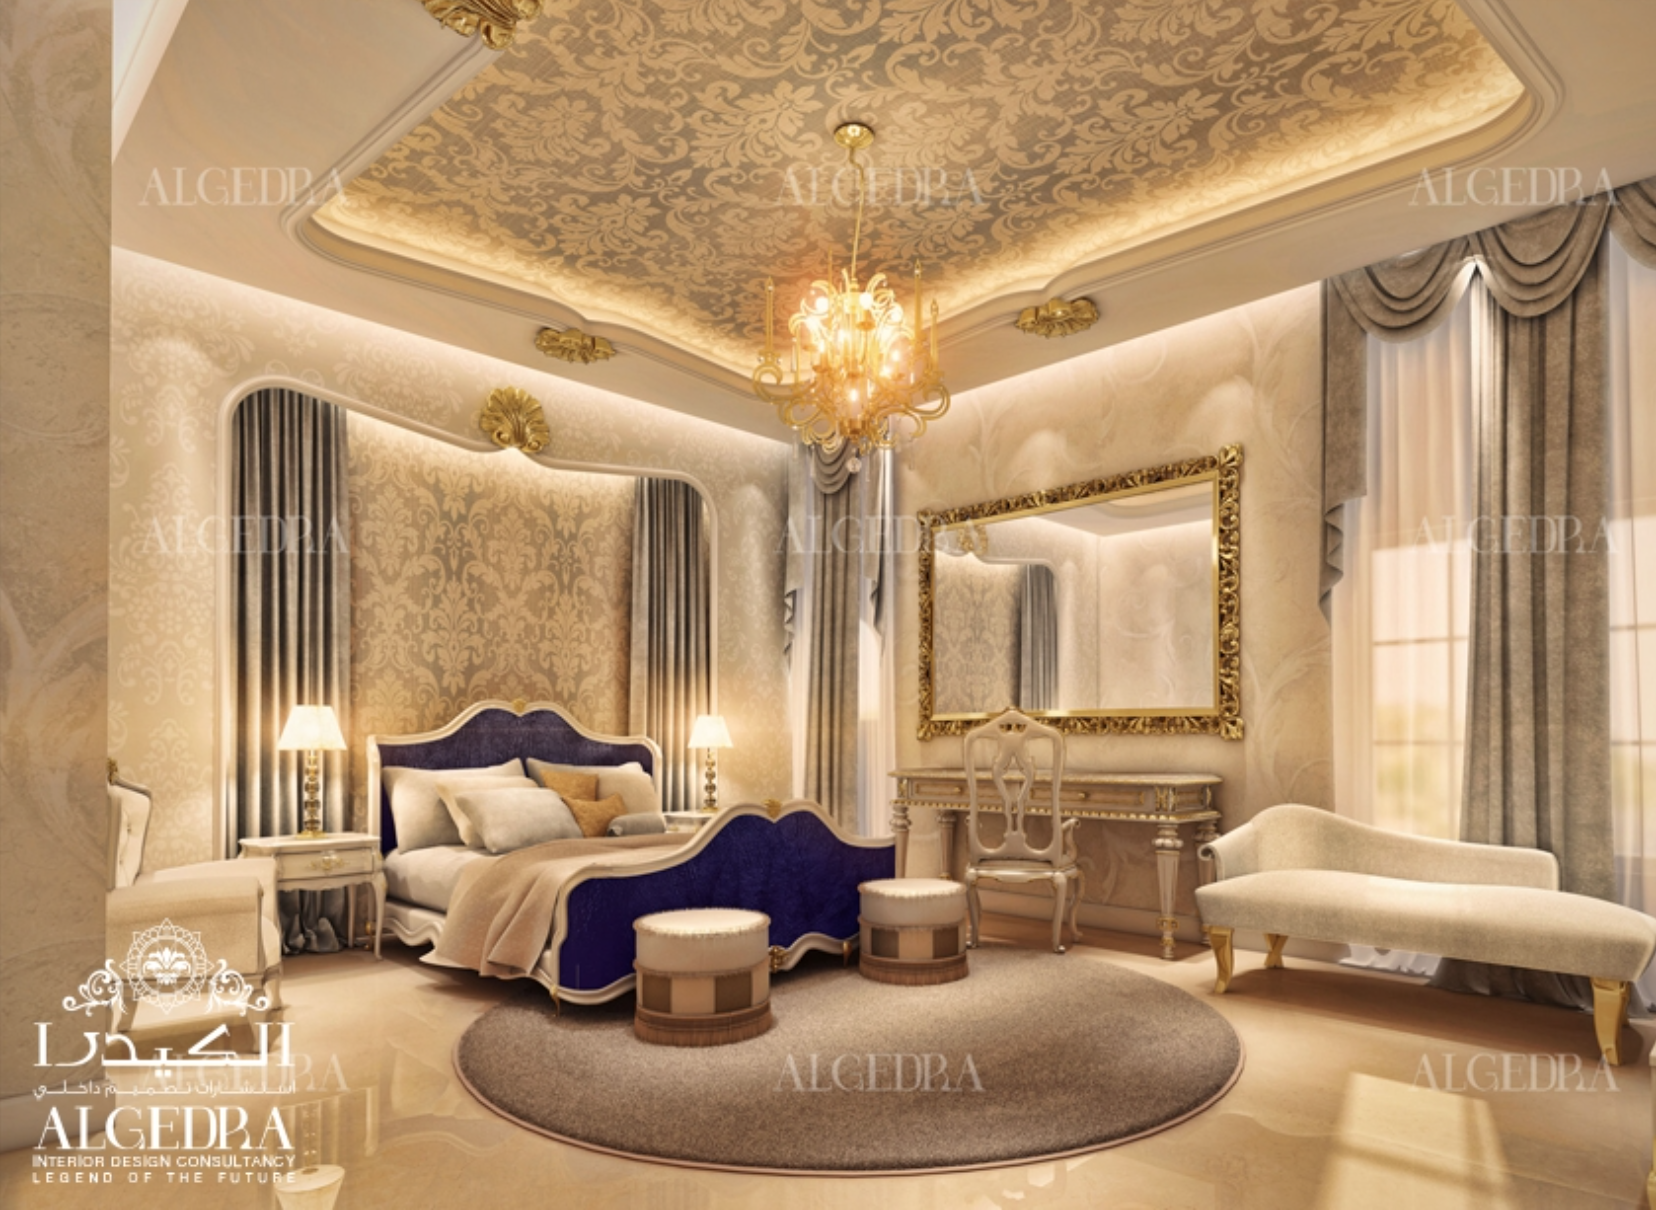 Elegant Royal Bedroom Furniture Images - Home